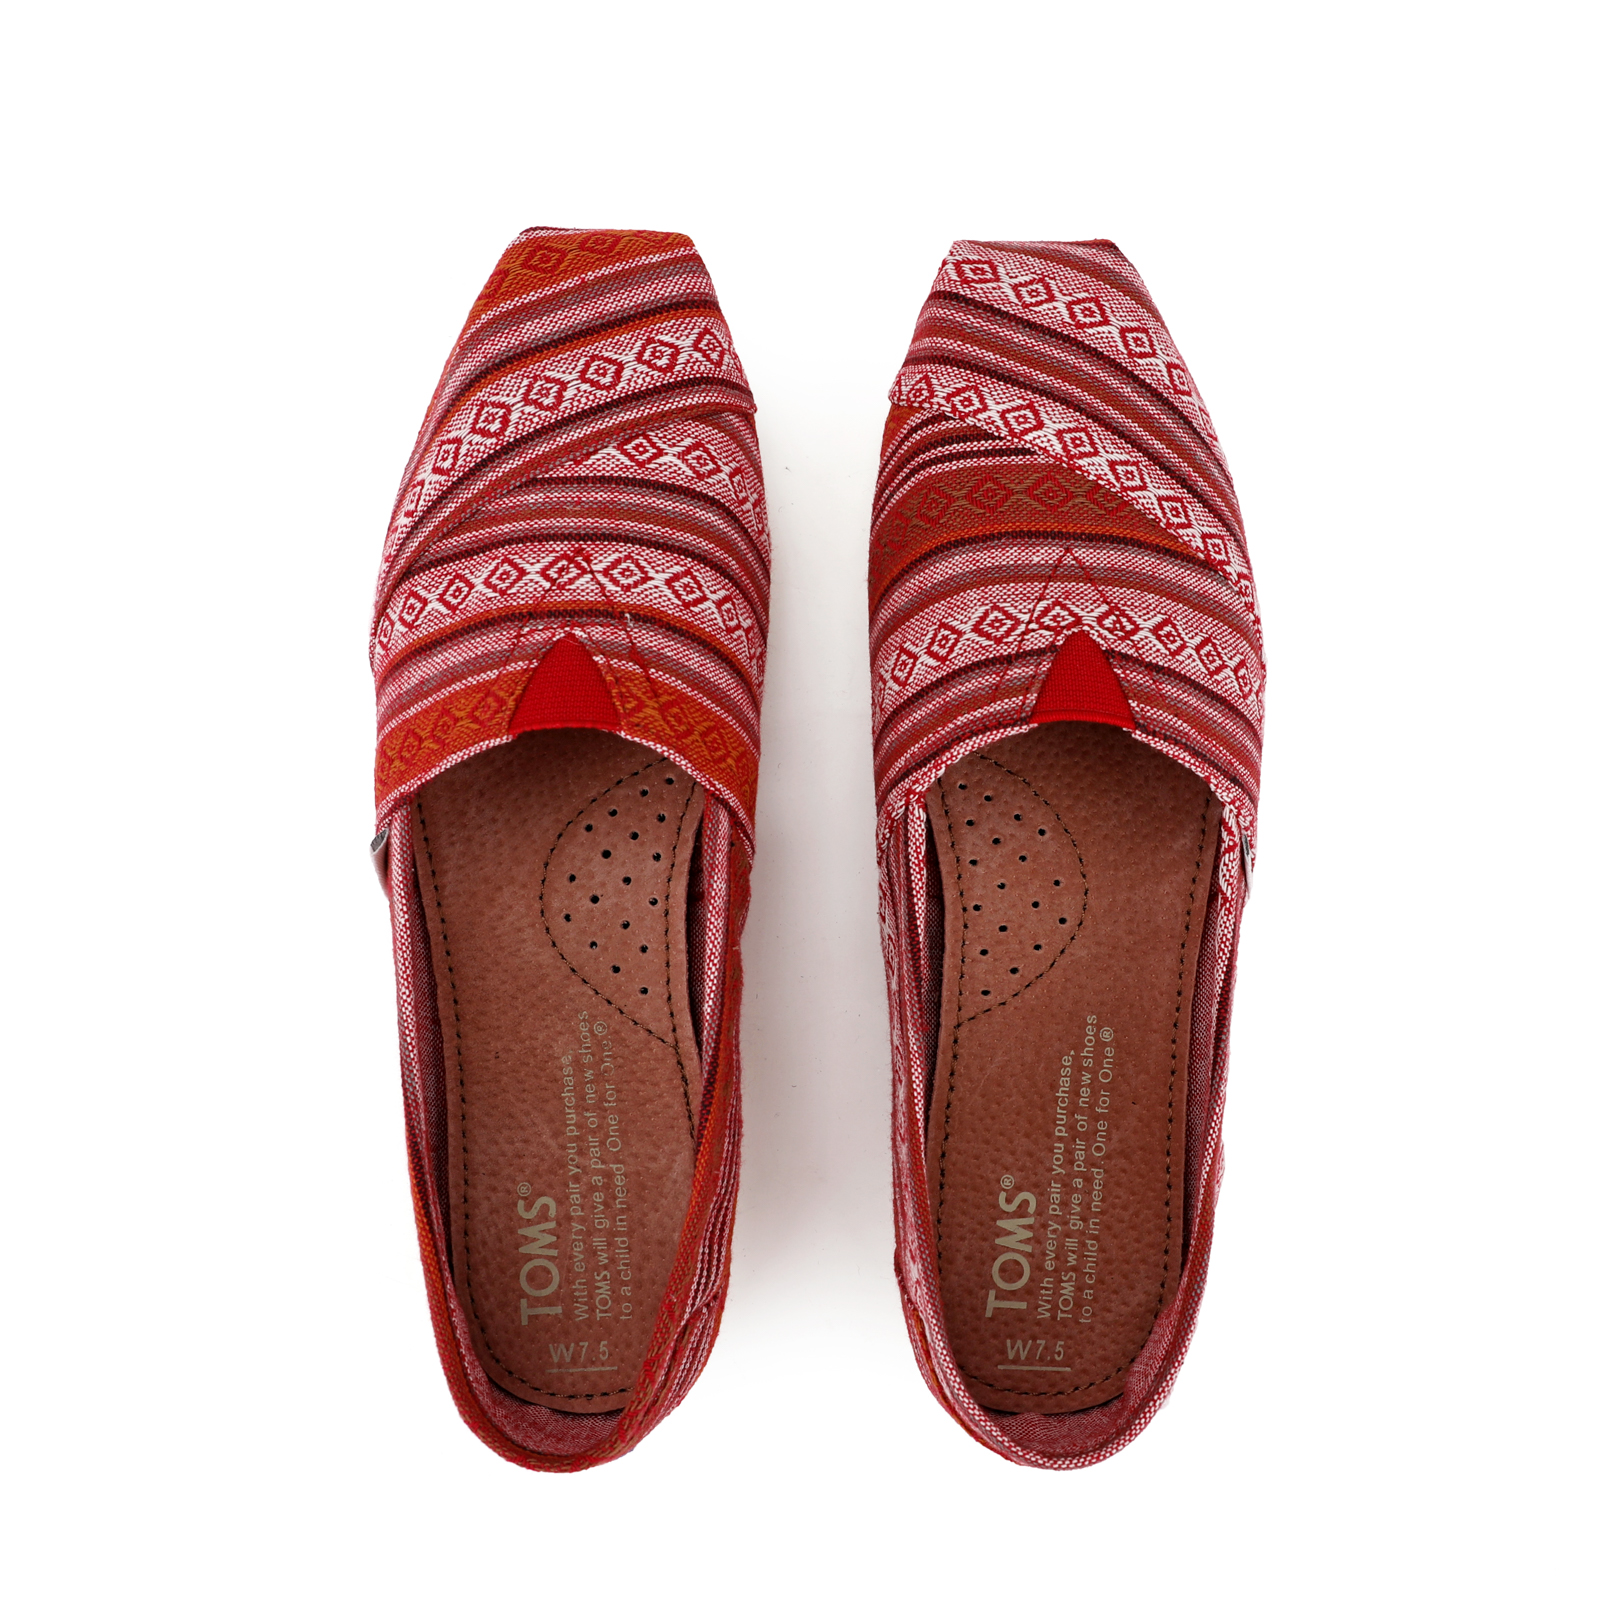 TOMS 香港新款時尚酒紅條紋帆布女鞋 - 點擊圖片關閉